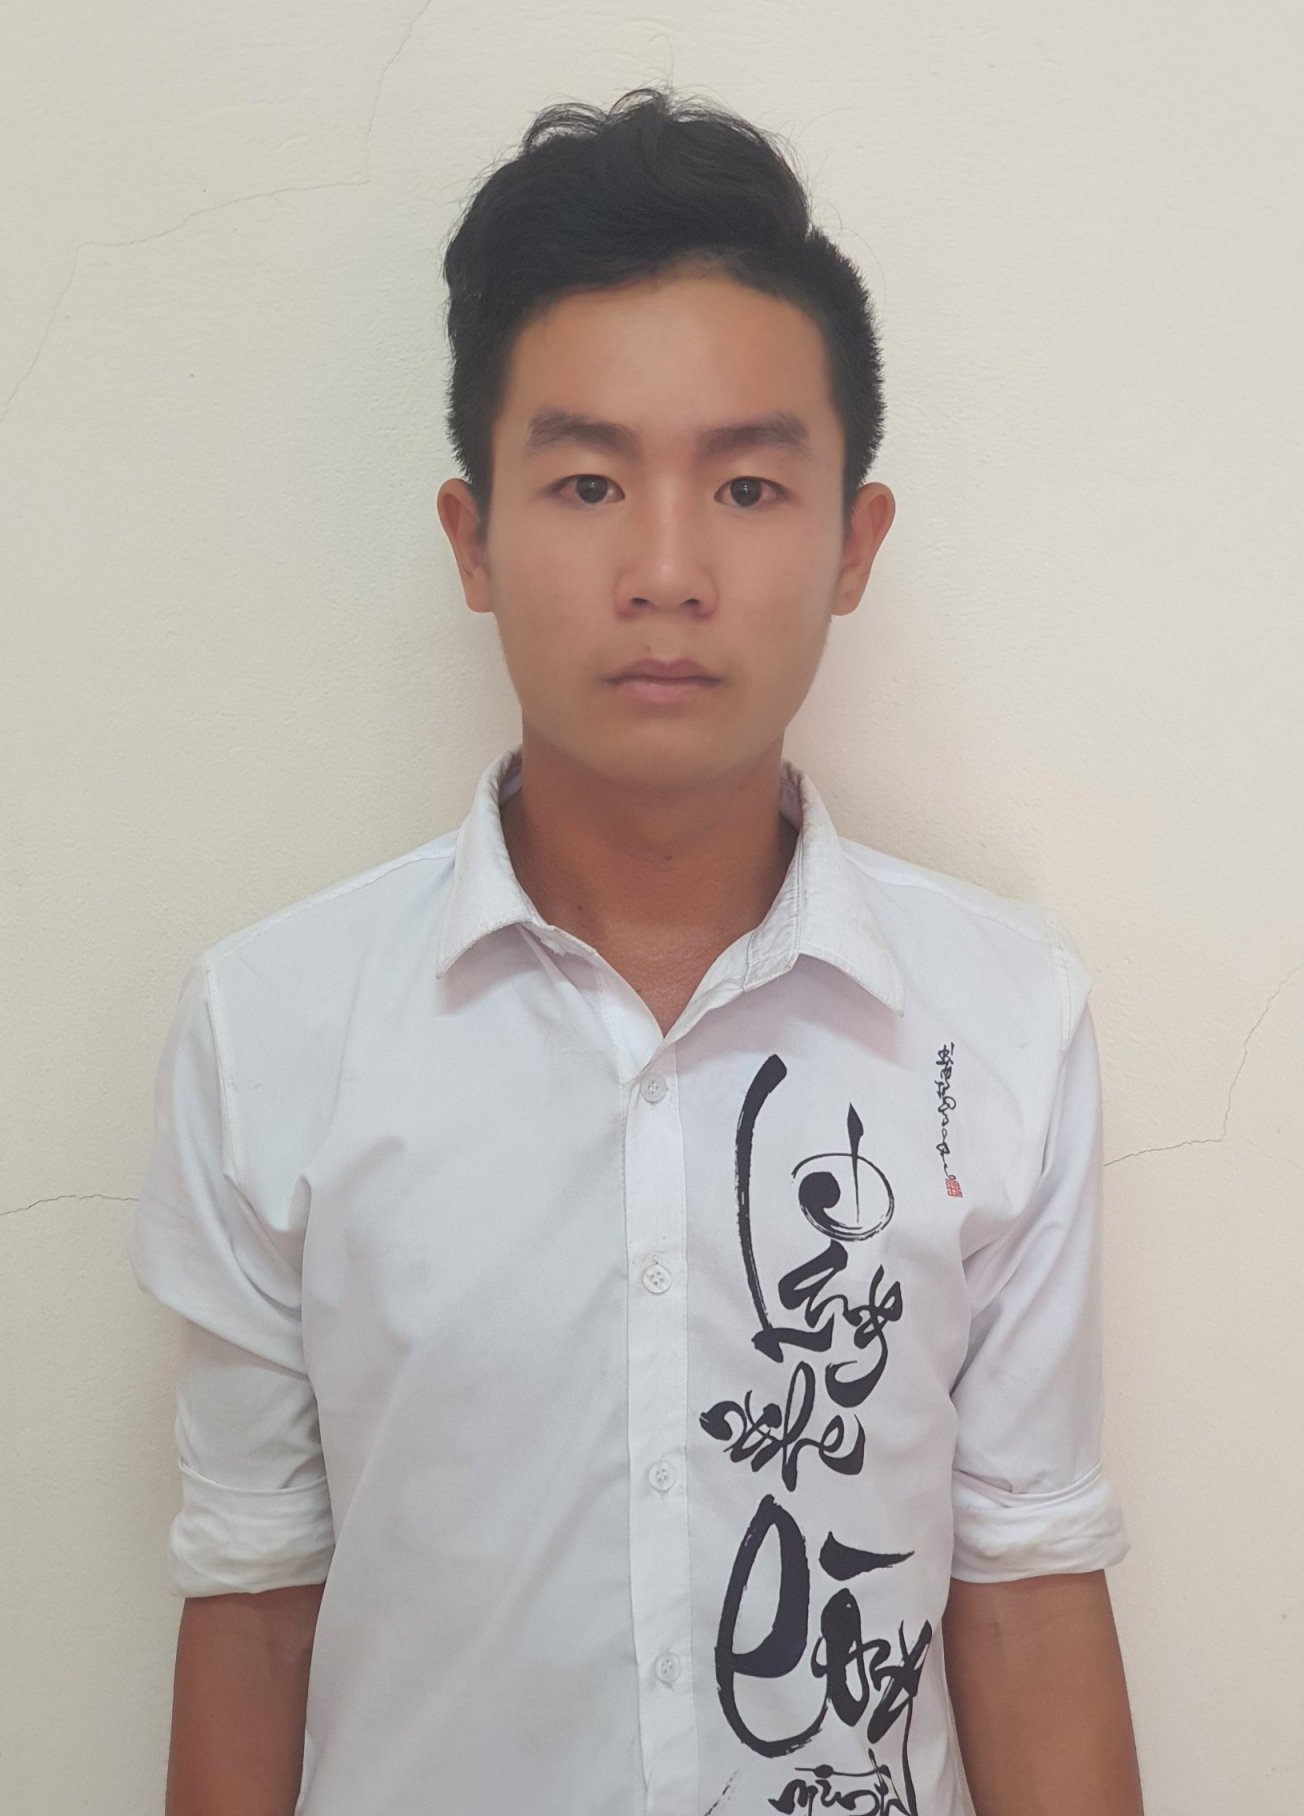 Đối tượng, Trần Hoài Bảo (22 tuổi, ngụ ấp Bào Bèo, xã Hiệp Mỹ Tây, huyện Cầu Ngang) bị khởi tố hình sự, do có hành vi giao cấu với người từ đủ 13 tuổi đến dưới 16 tuổi.